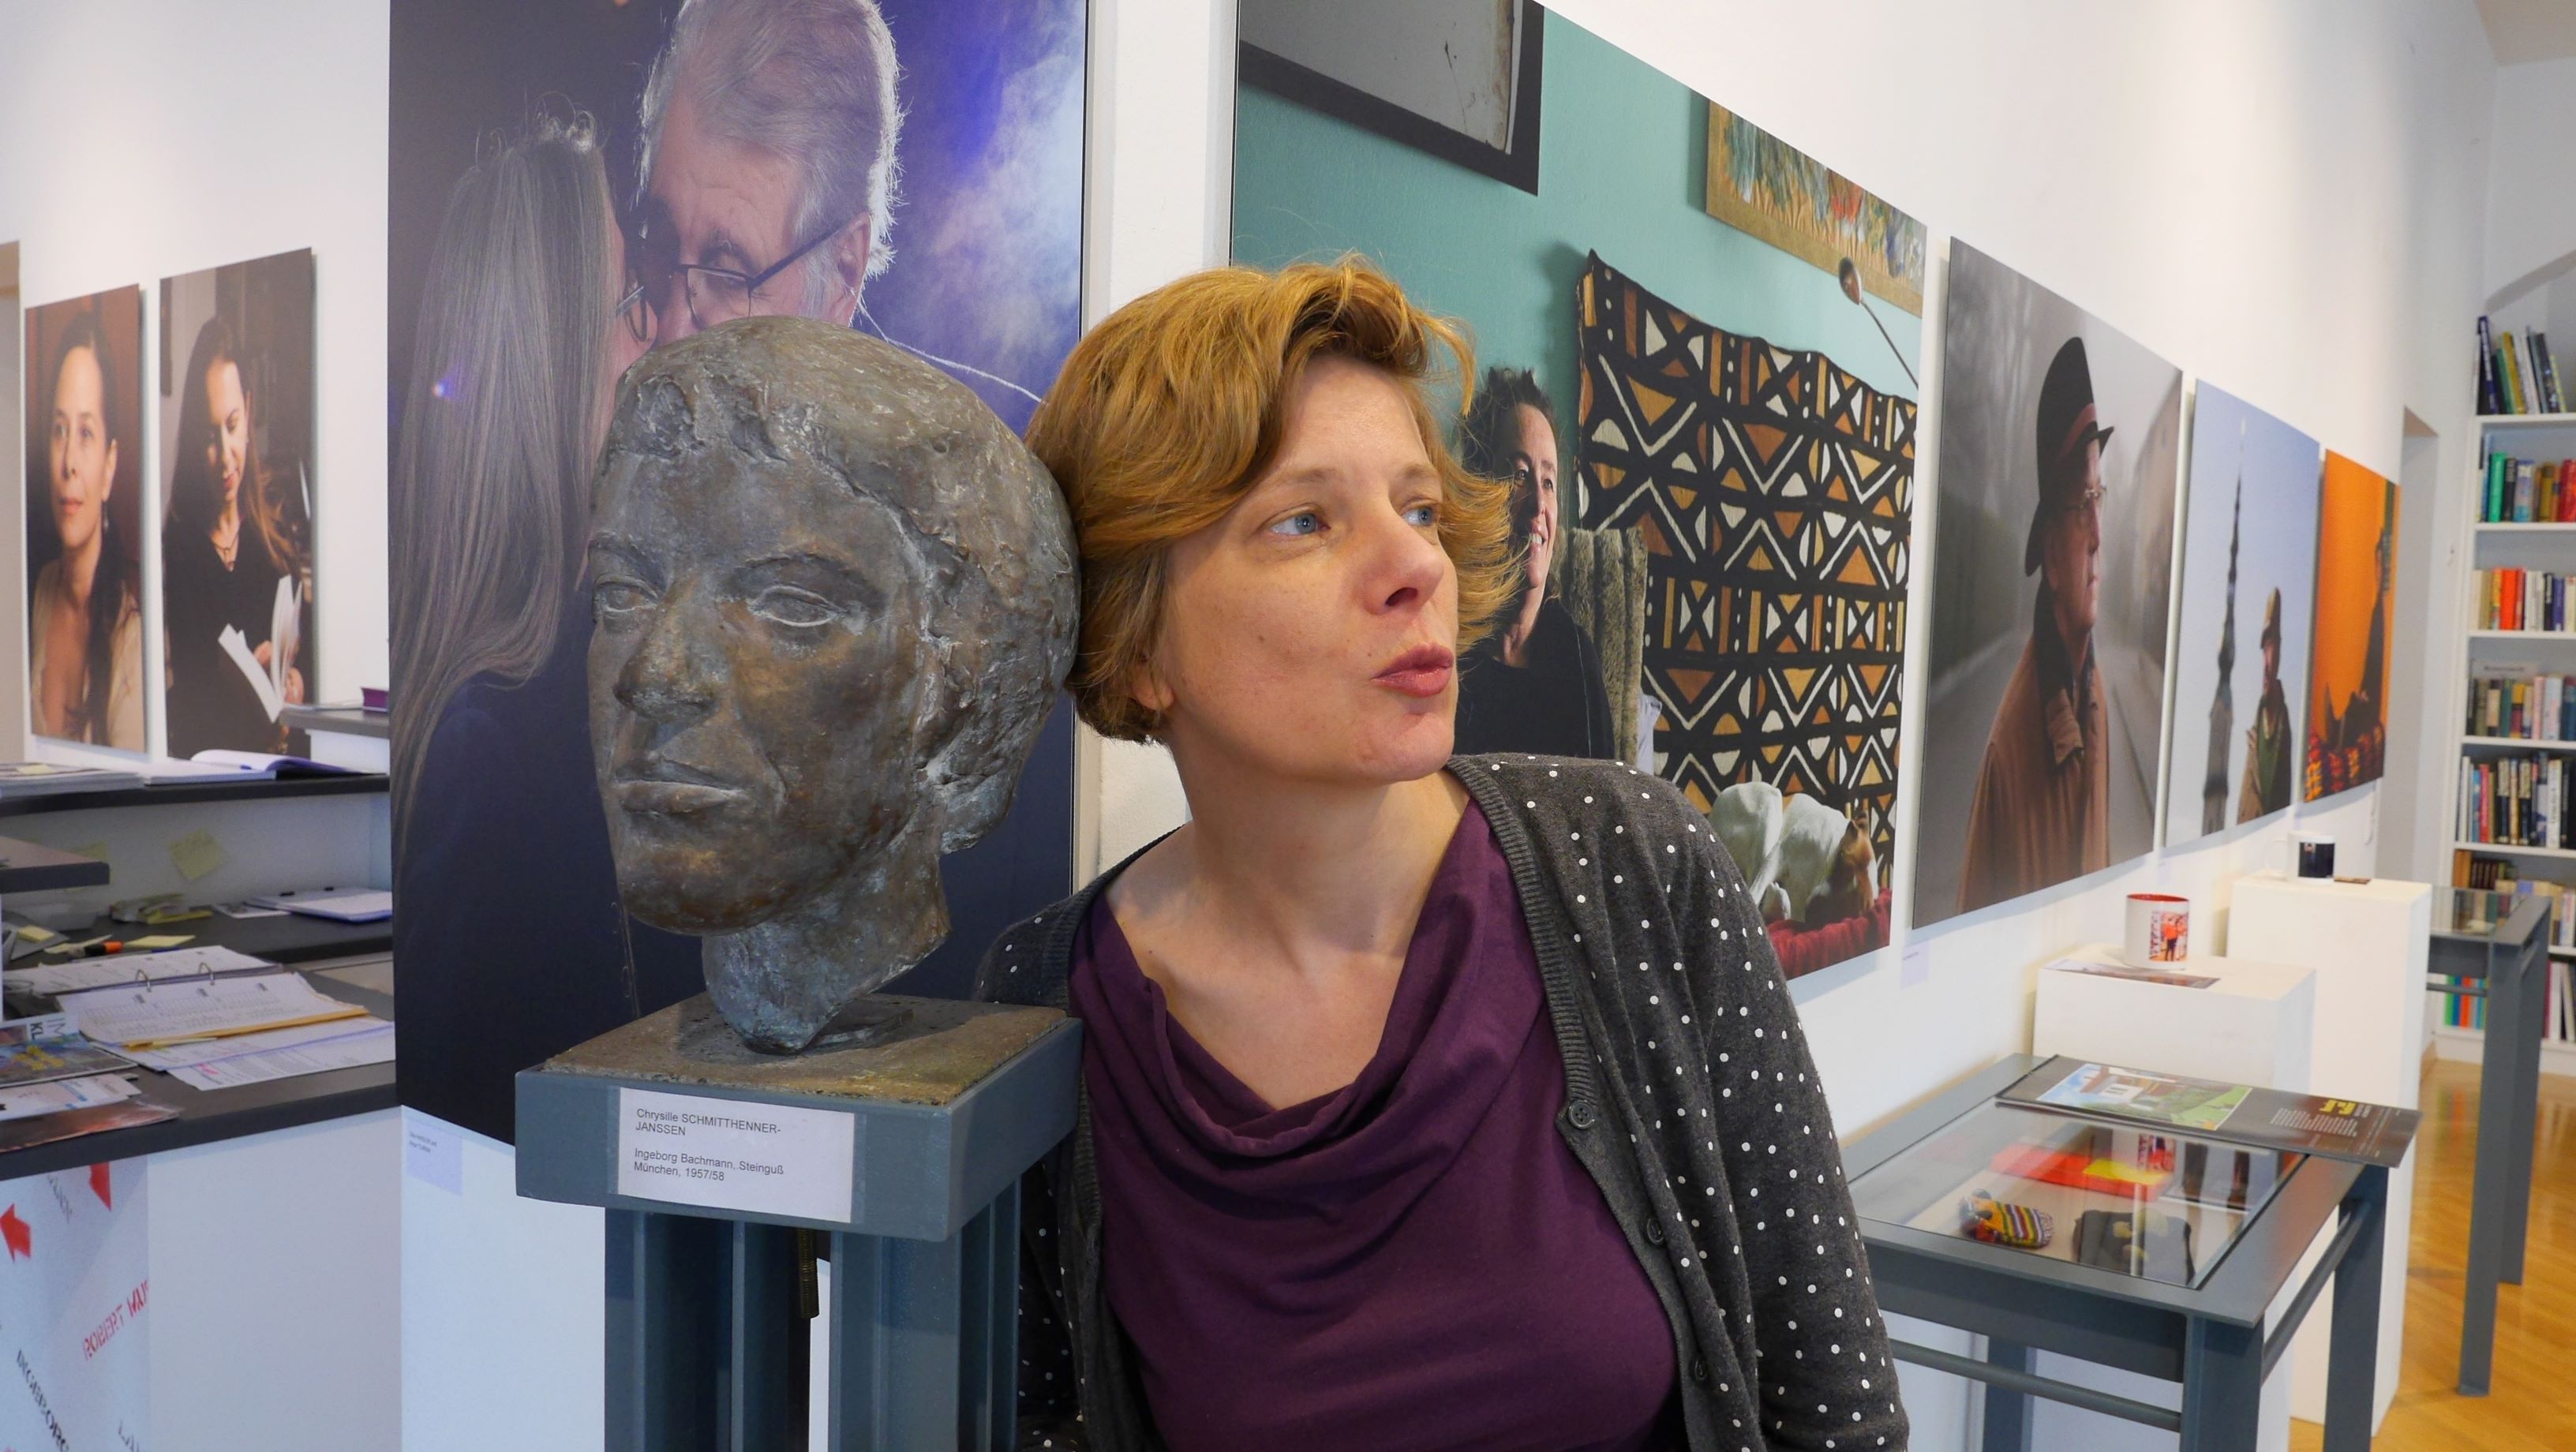 Poiarkov im Robert-Musil-Literatur-Museum, Klagenfurt, neben einer Skulptur des Kopfes von Ingeborg Bachmann; an der Wand großformatige Fotos